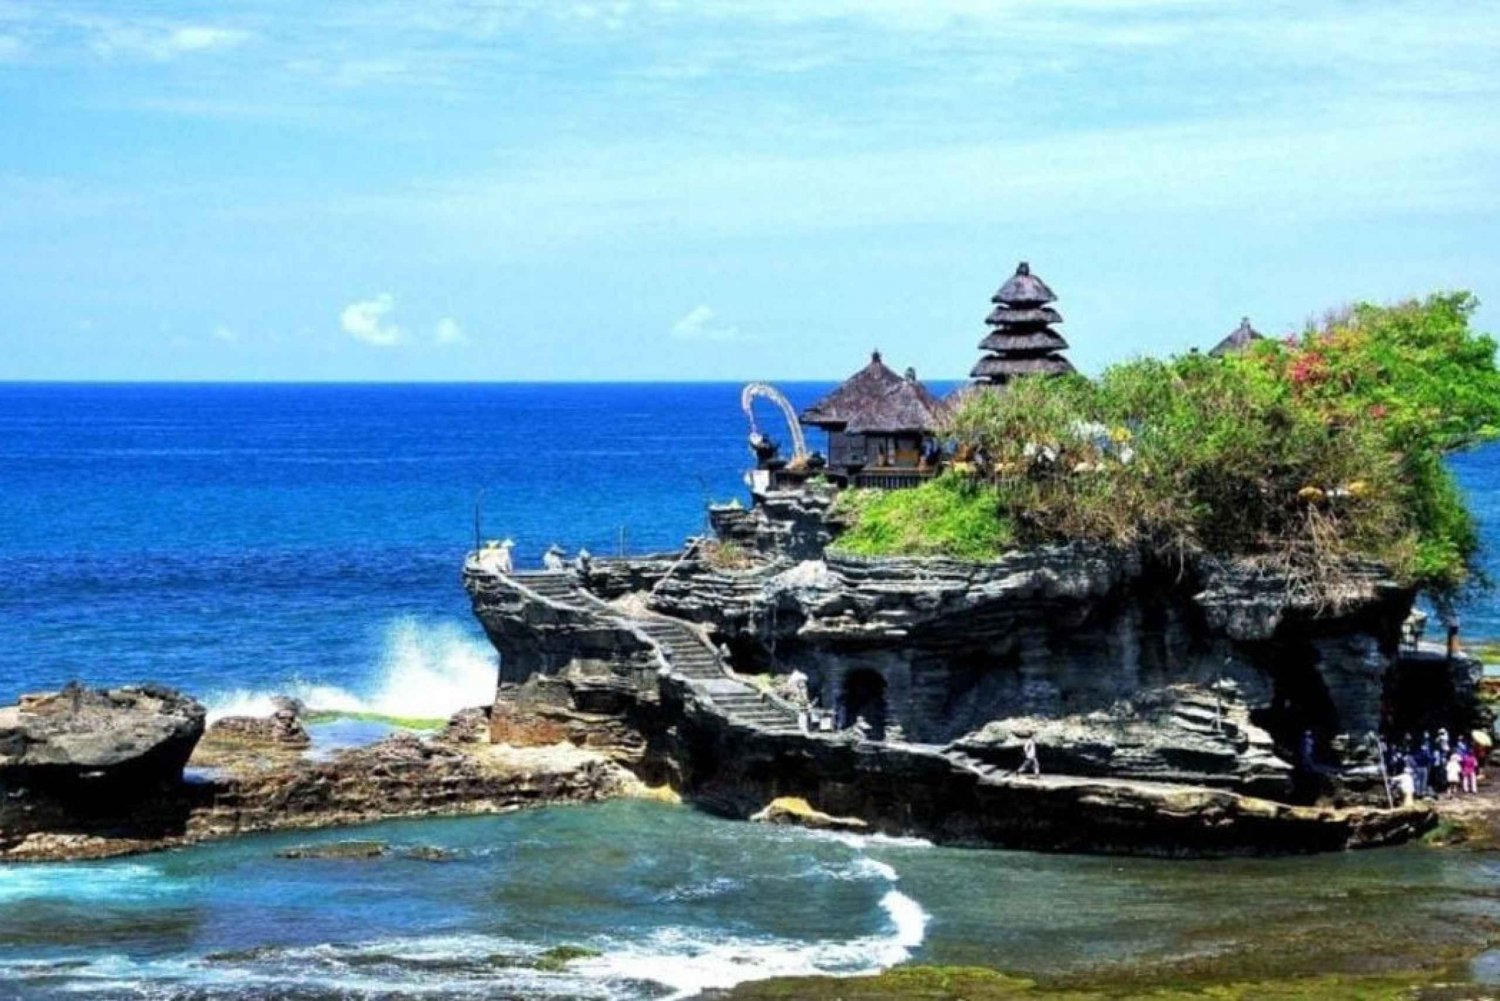 Bali : Tanah Lotin temppeli, Padang-padangin ranta, Kecak-tanssi